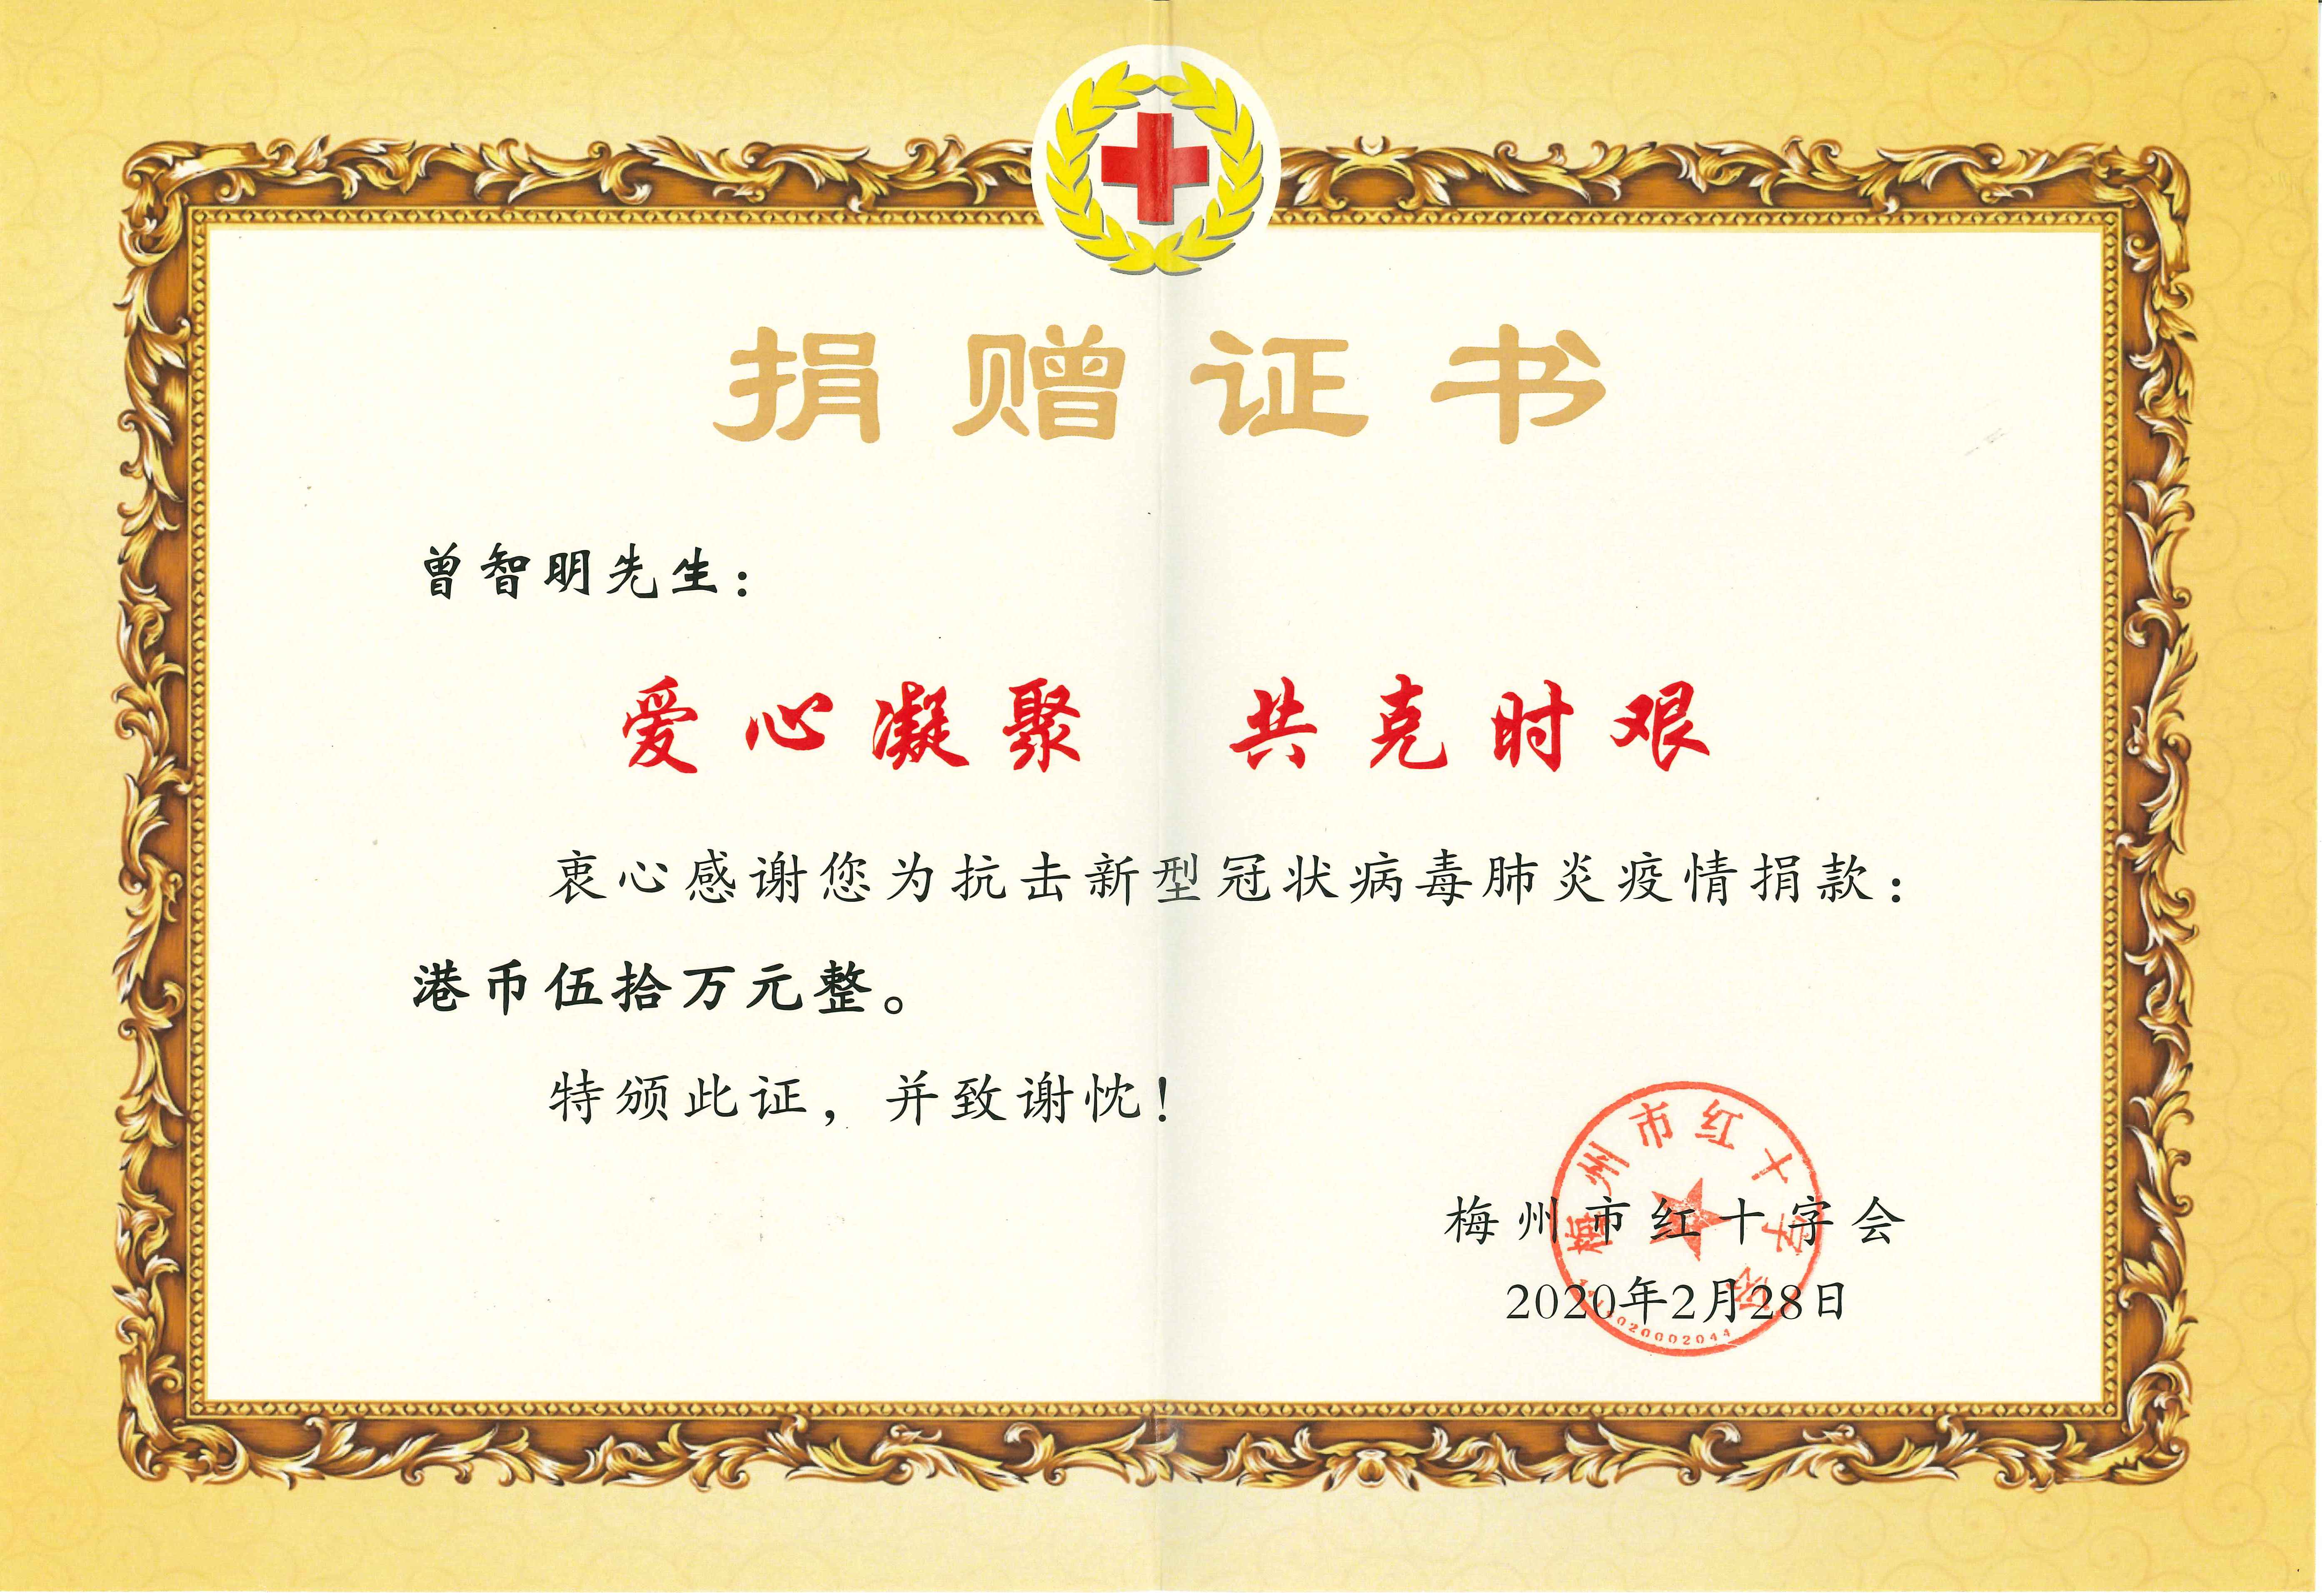 曾智明向梅州市红十字会捐赠港币50万元